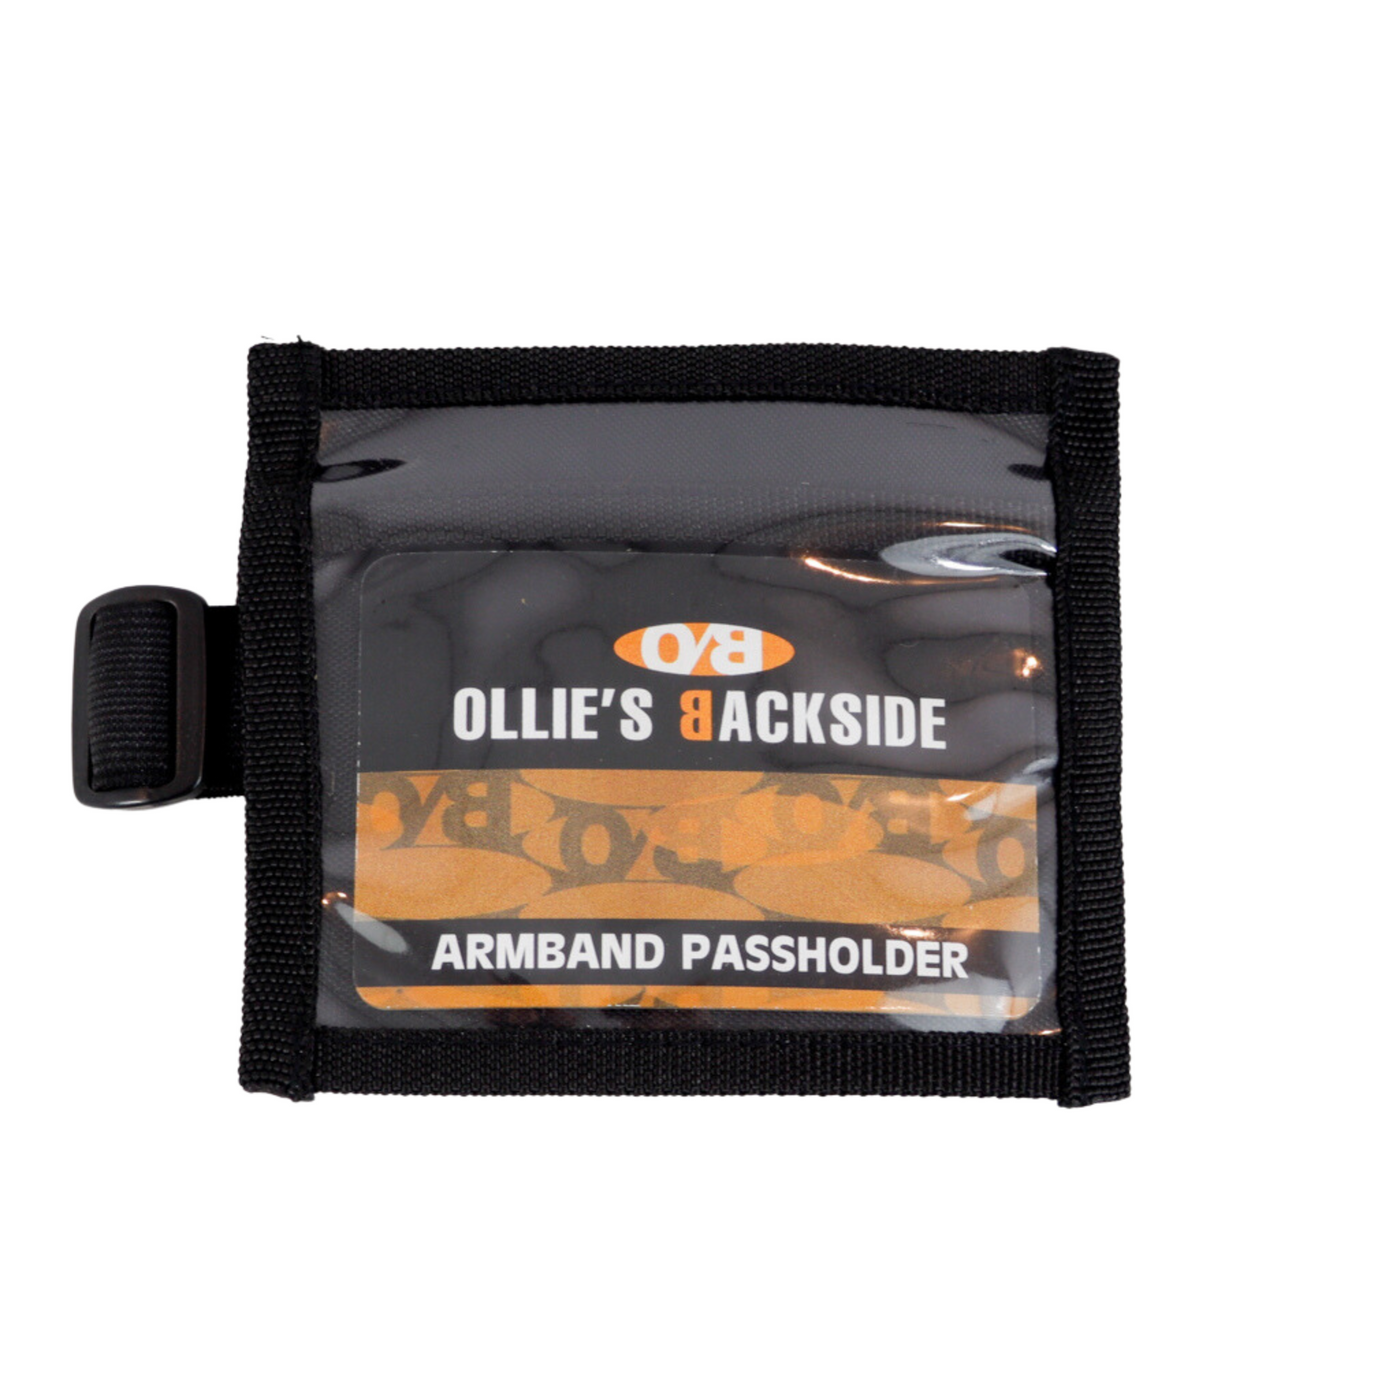 Ollie's Backside Armband Passholder